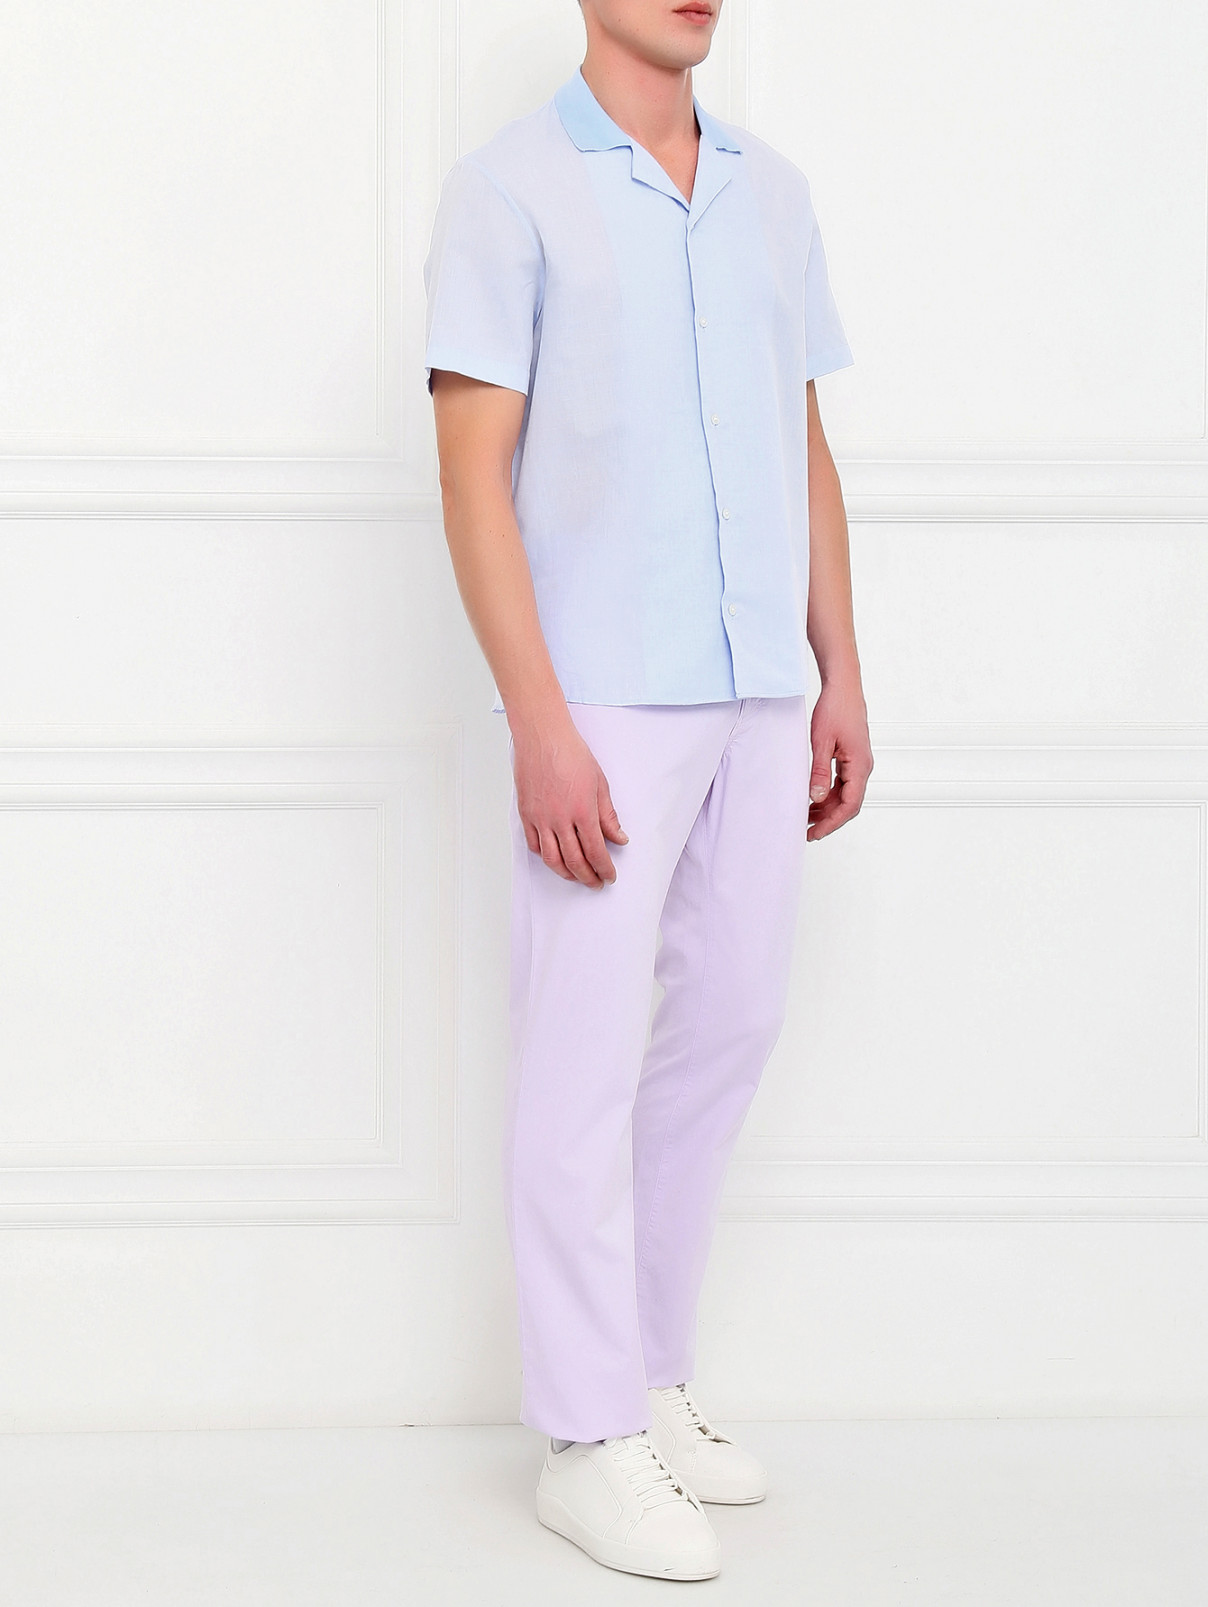 Рубашка из хлопка и льна с коротким рукавом Emporio Armani  –  Модель Общий вид  – Цвет:  Синий